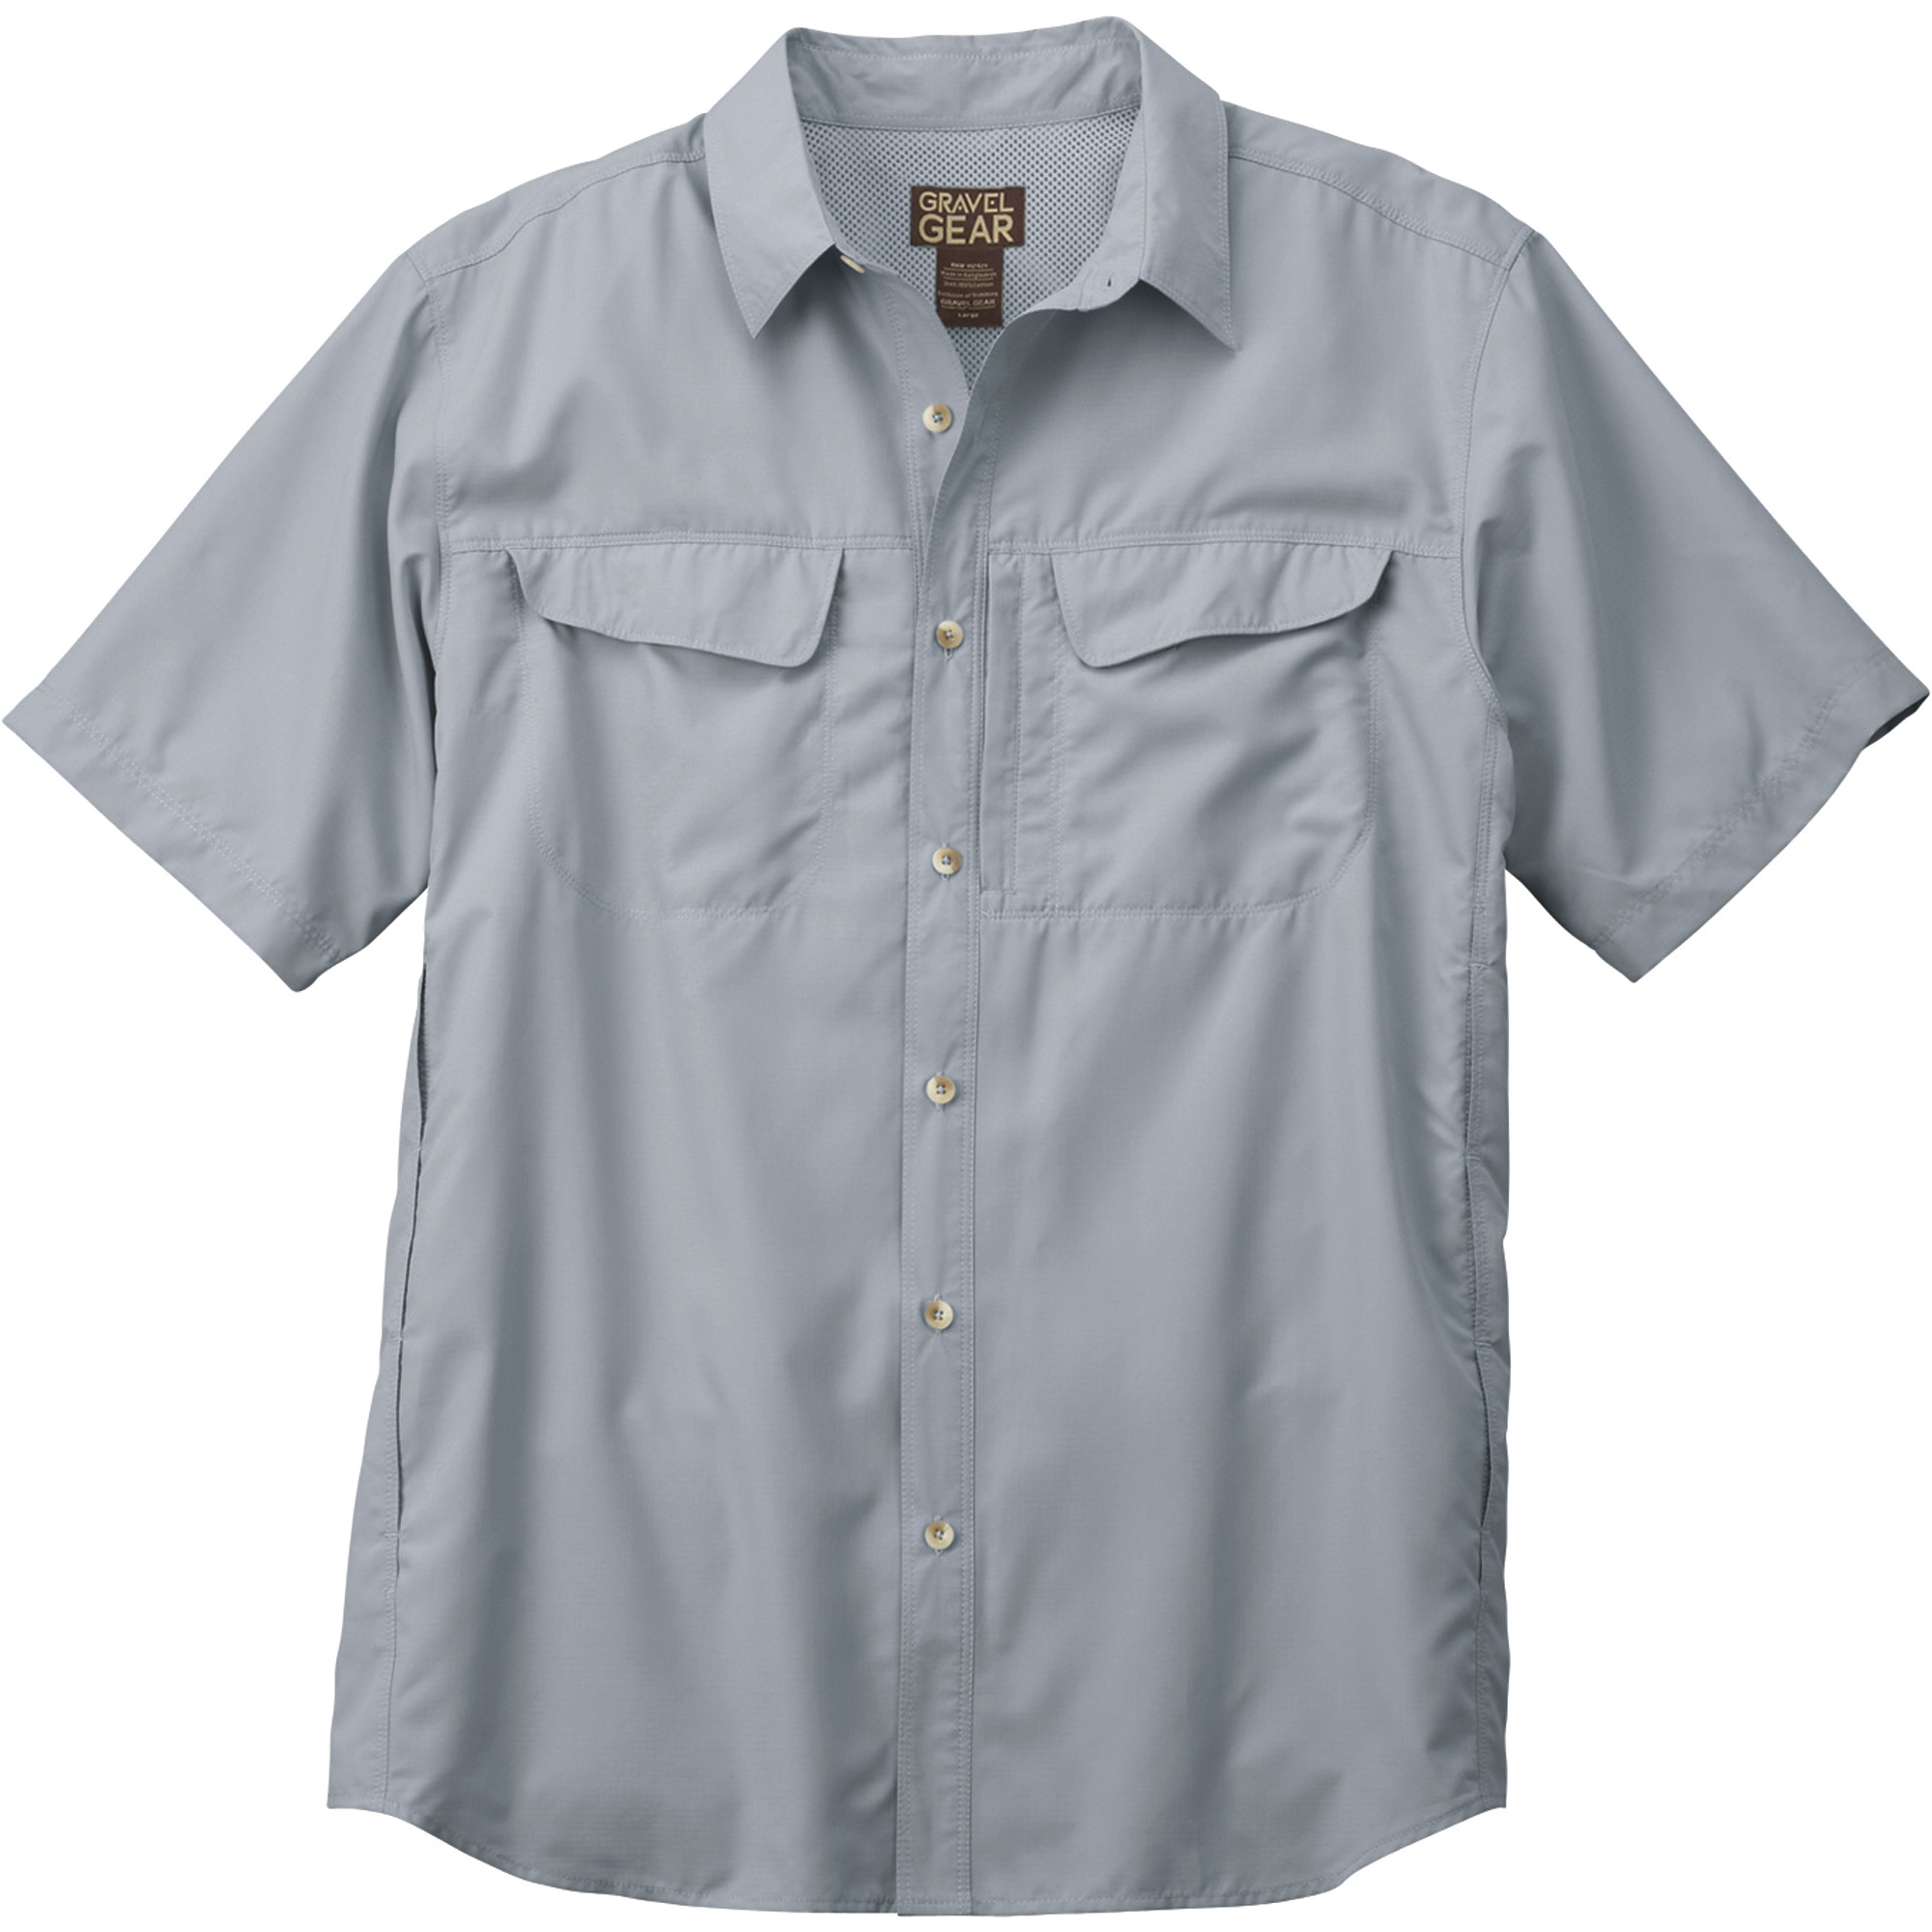 Gravel Gear Men's UPF 30 Quick-Dry Polyester Ripstop Shirt - Short Sleeve, Steel Gray, Medium